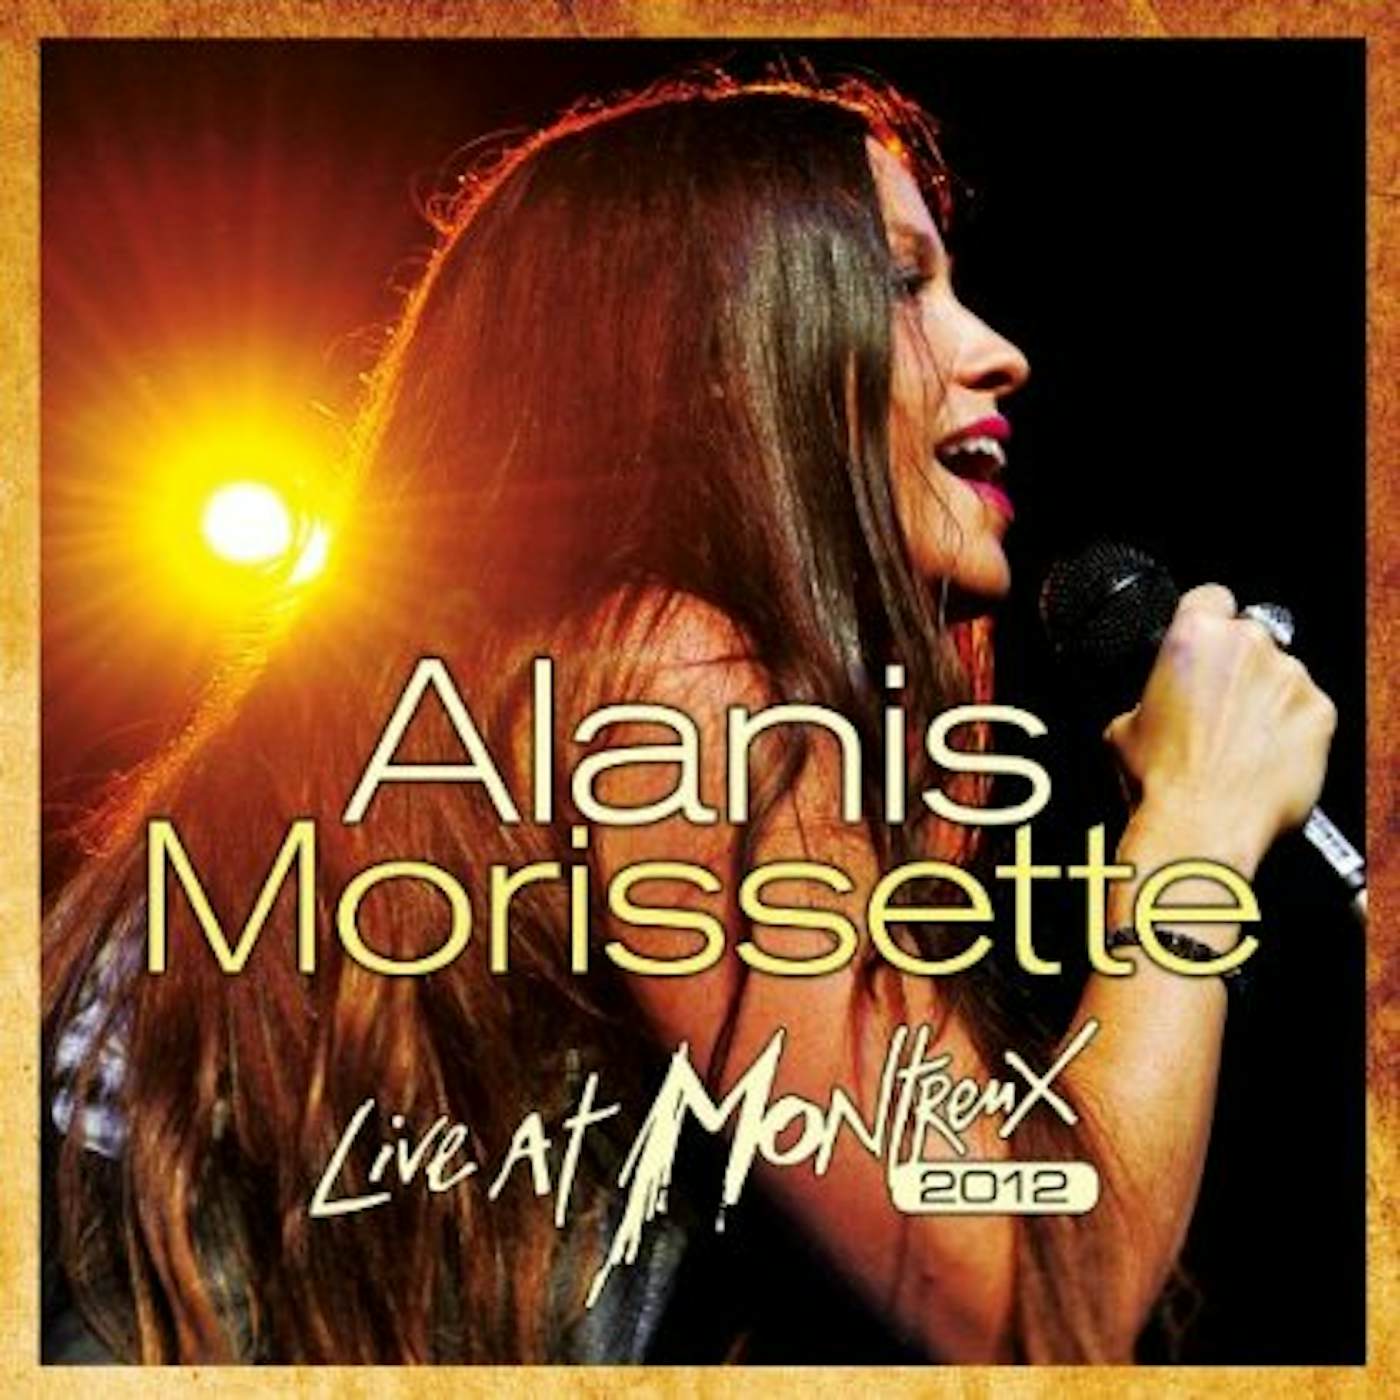 Alanis Morissette LIVE AT MONTREAUX 2012 CD